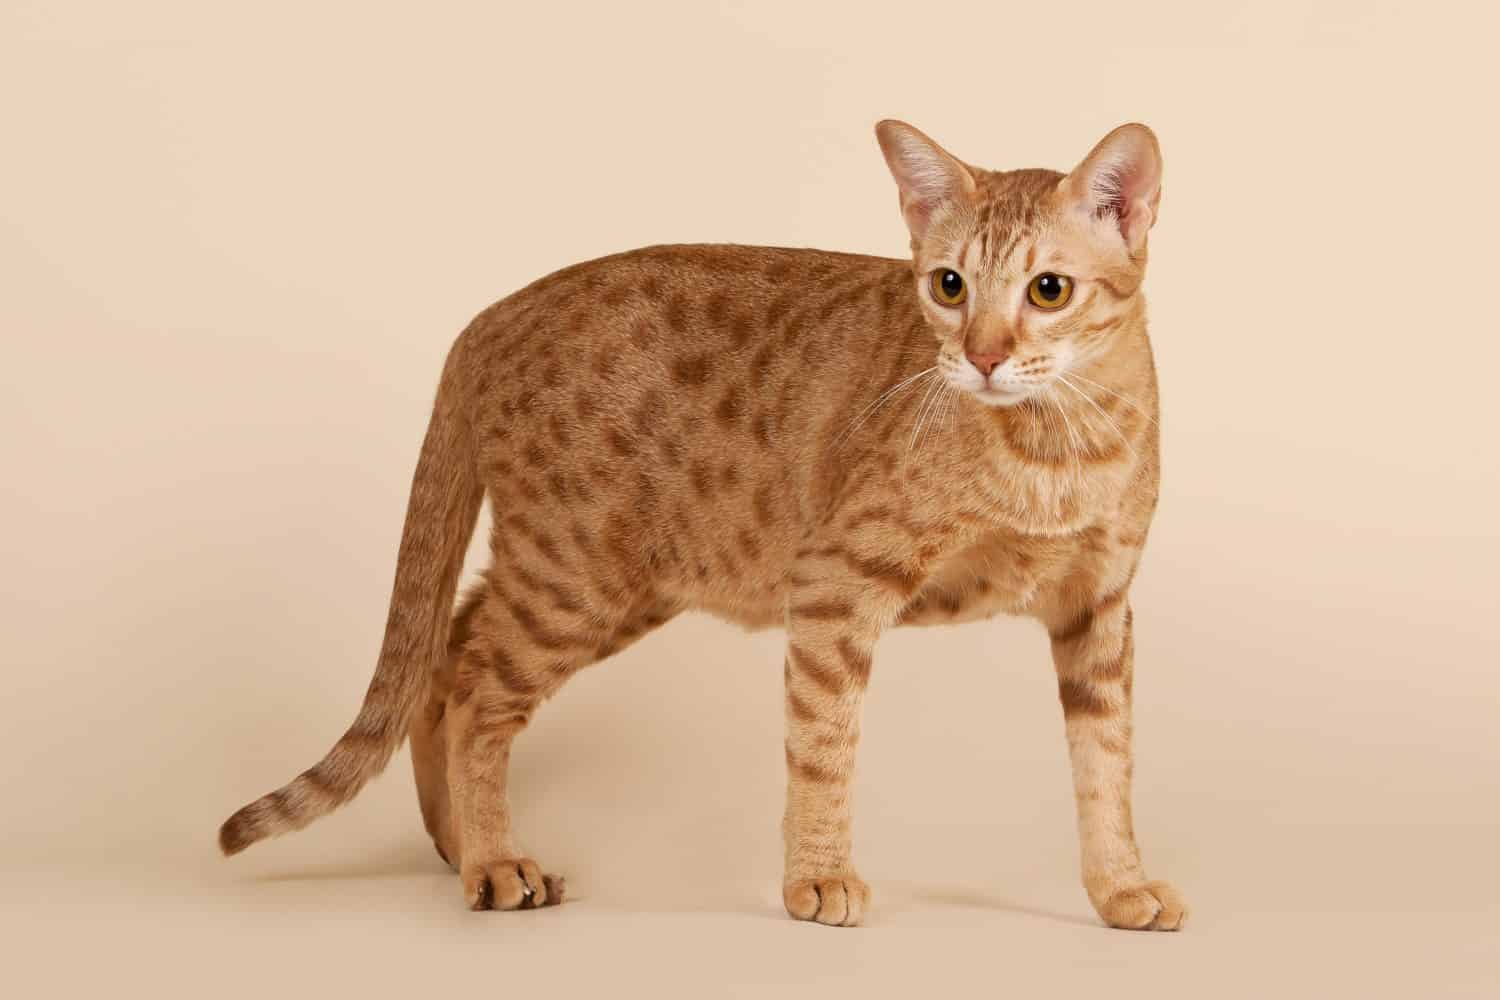 ocicat male cat on light beige background